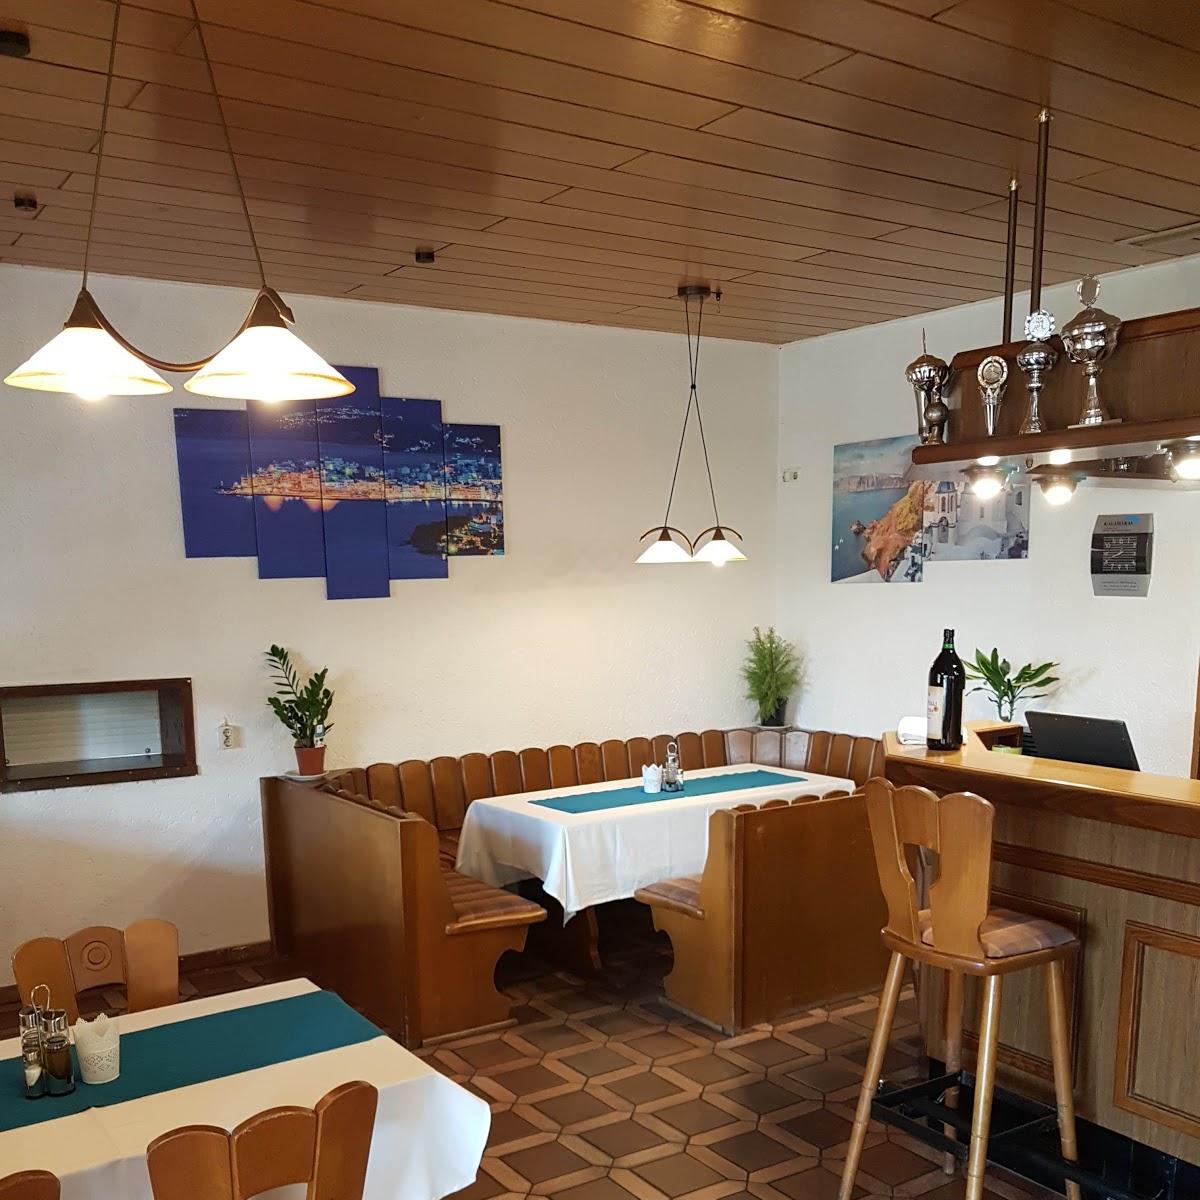 Restaurant "Griechische Taverne Alexandros" in  Schwandorf